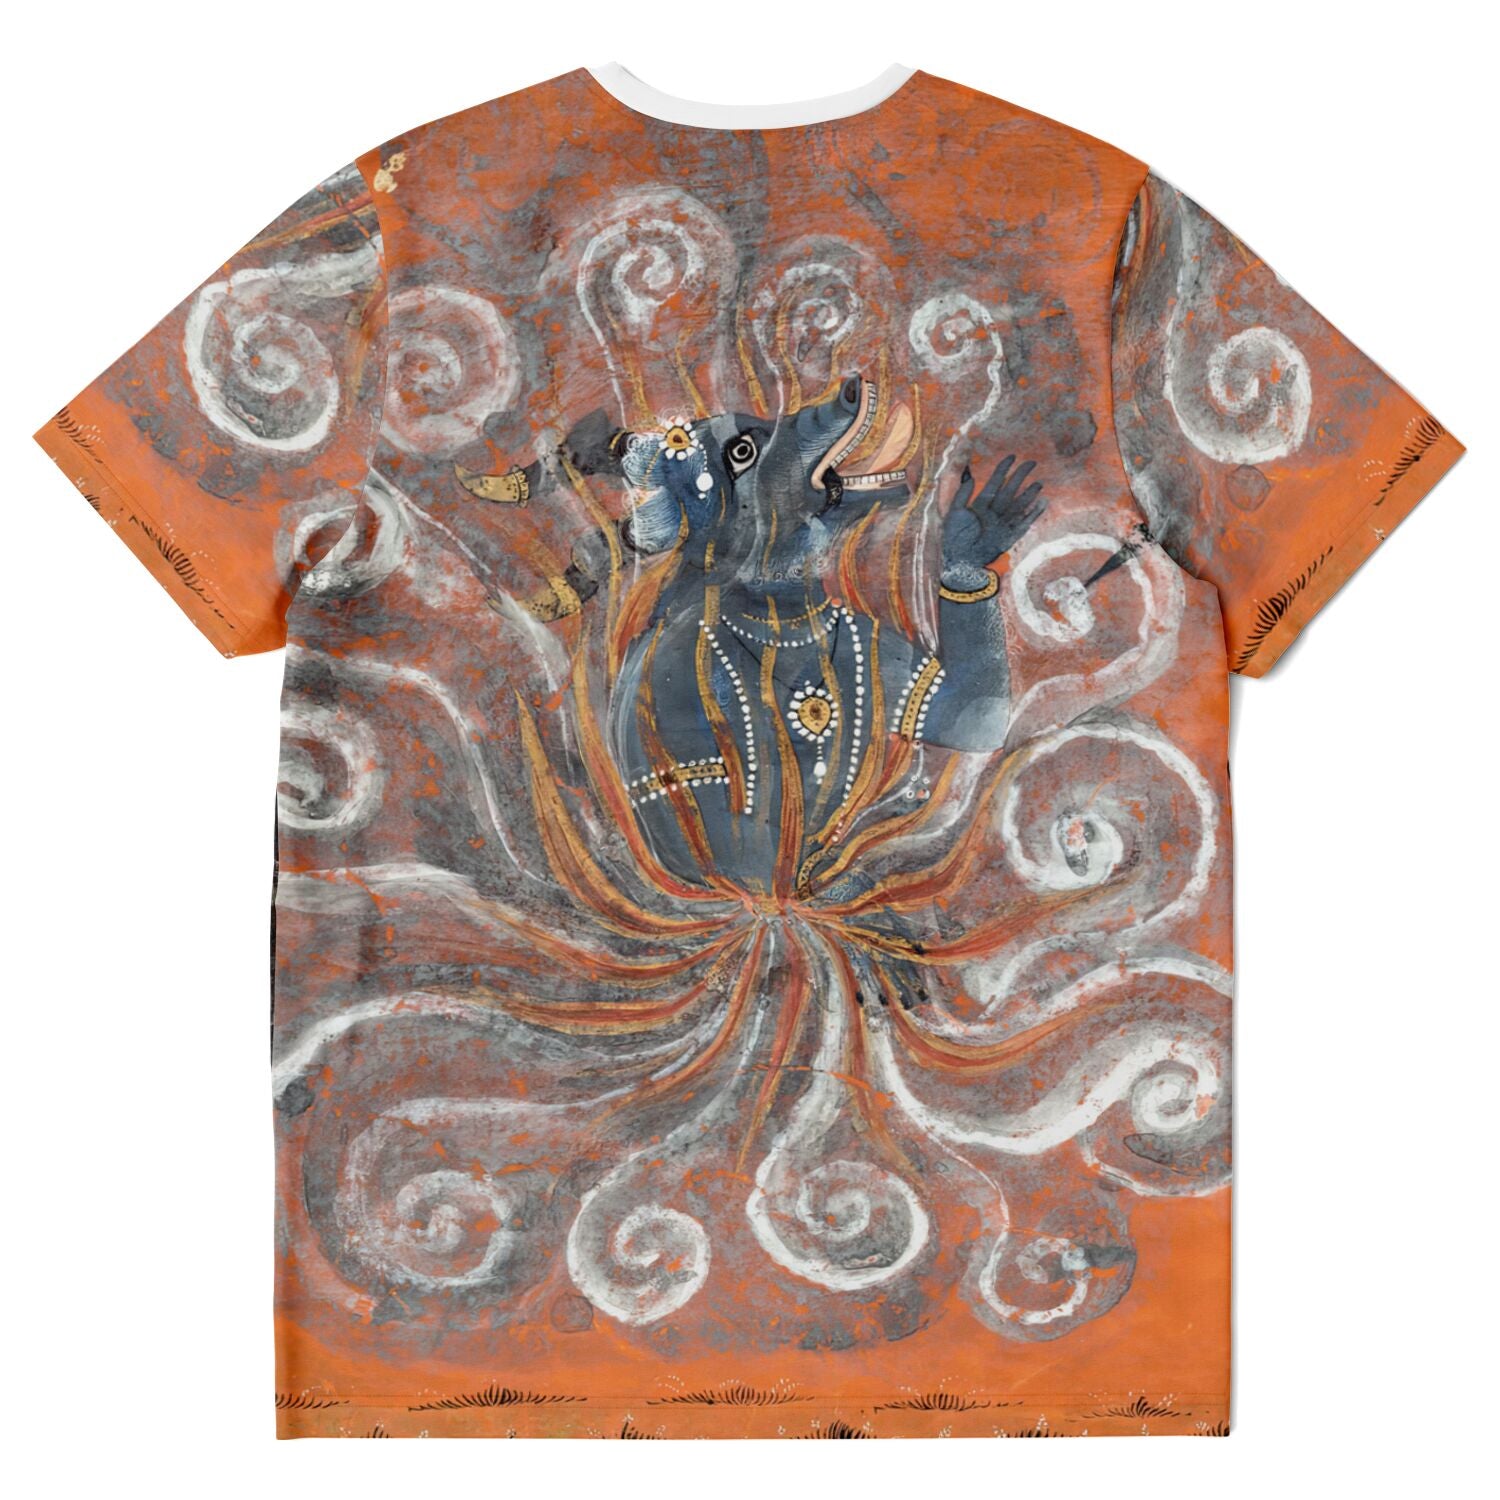 T-shirt Kali Shakti Durga Slaying the Buffalo Demon Asura, Mahishasura | Goddess Parvati Durga Devi Graphic Art T-Shirt